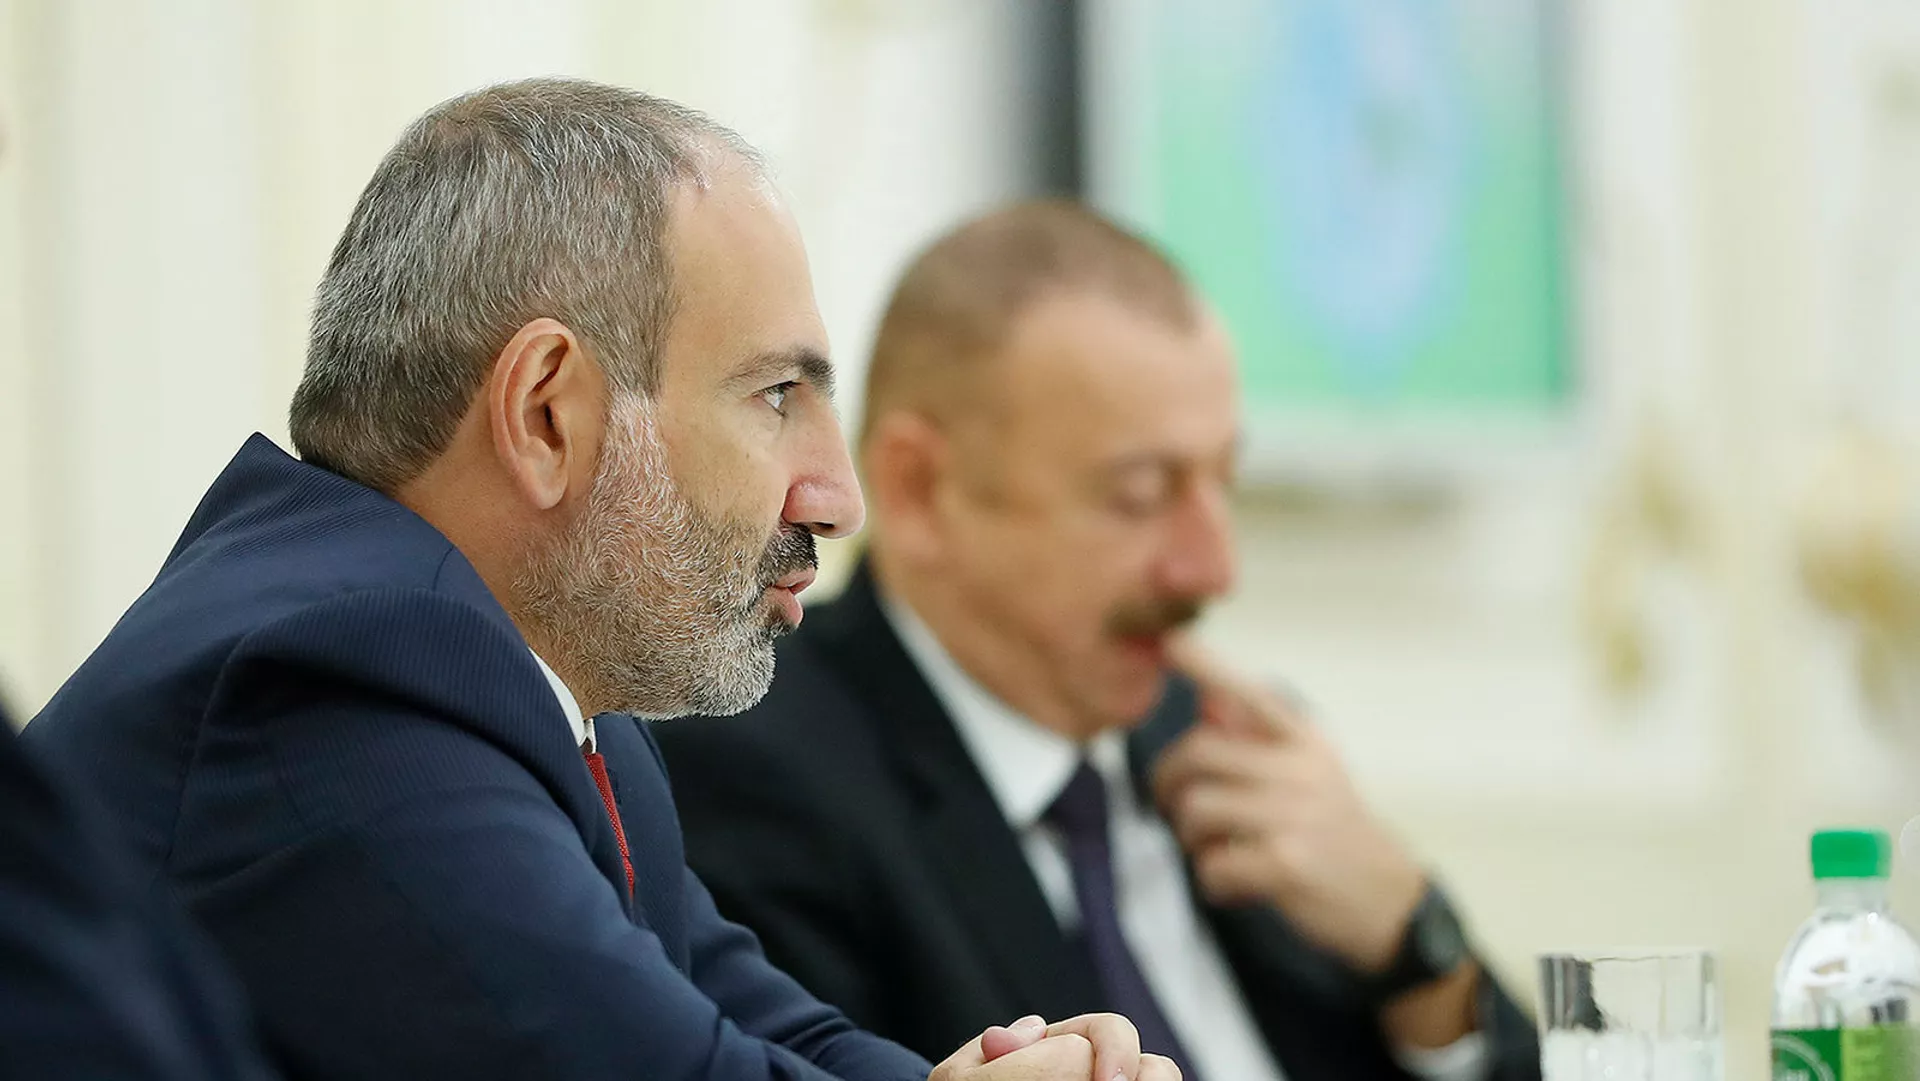 ՀՀ-ում հարցվածների 57.2%-ը չի կարծում, որ Ադրբեջանի հետ շահավետ պայմանագիր կկնքվի. GALLUP